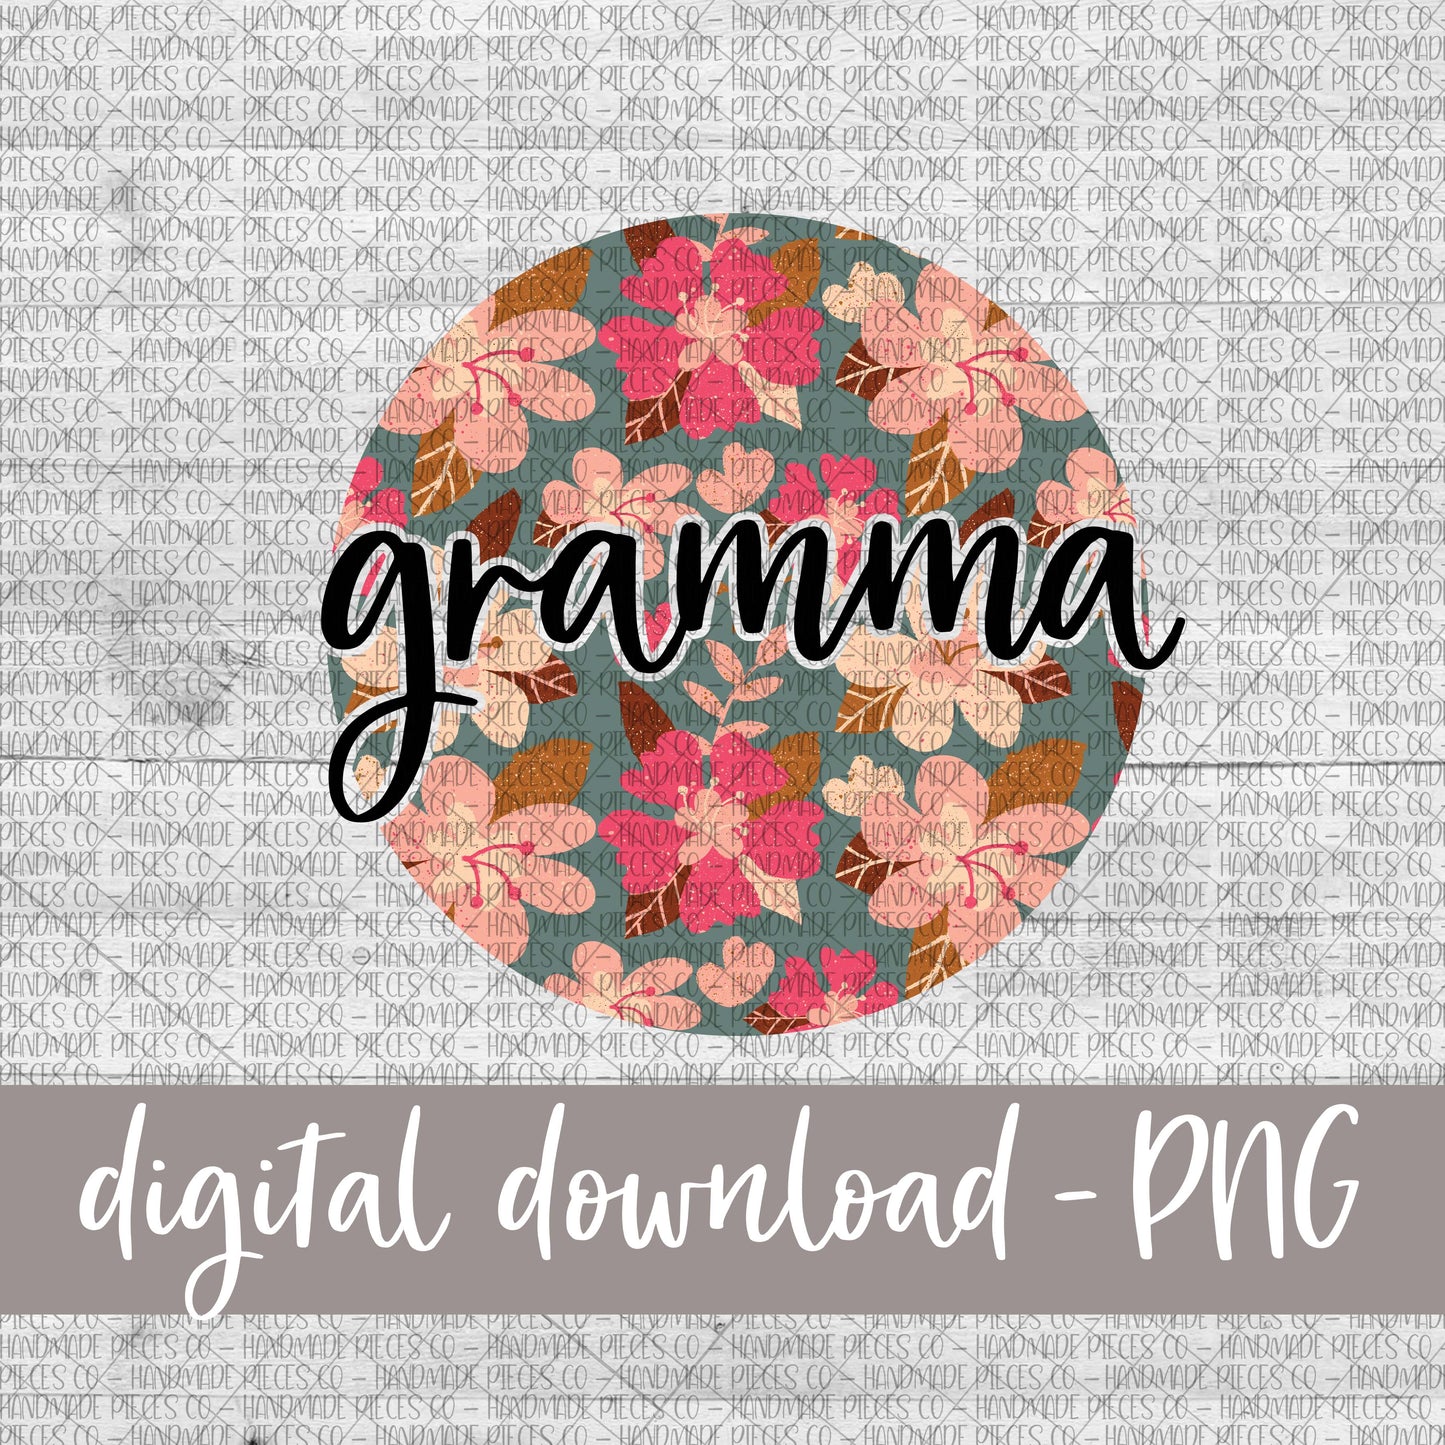 Gramma Round, Floral 8 - Digital Download